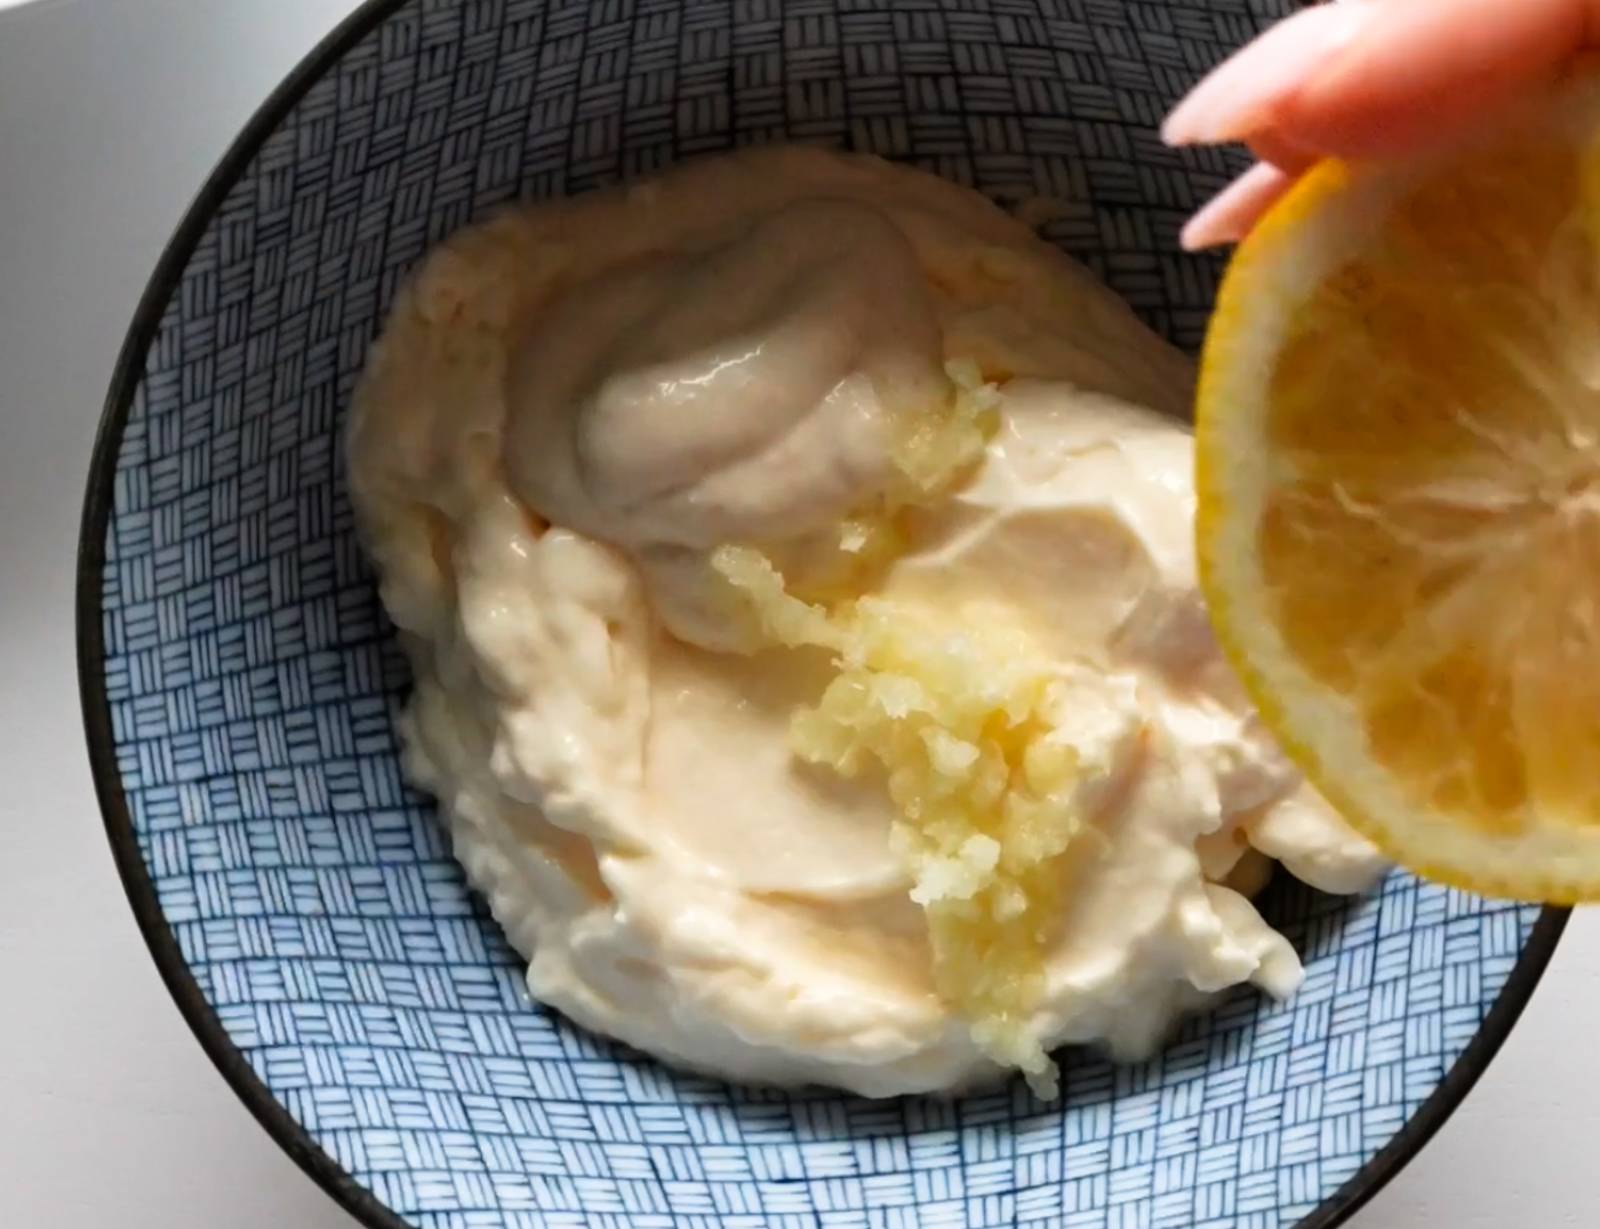 Mixing aioli in a bowl with mayonnaise, horseradish, garlic, and lemon juice.